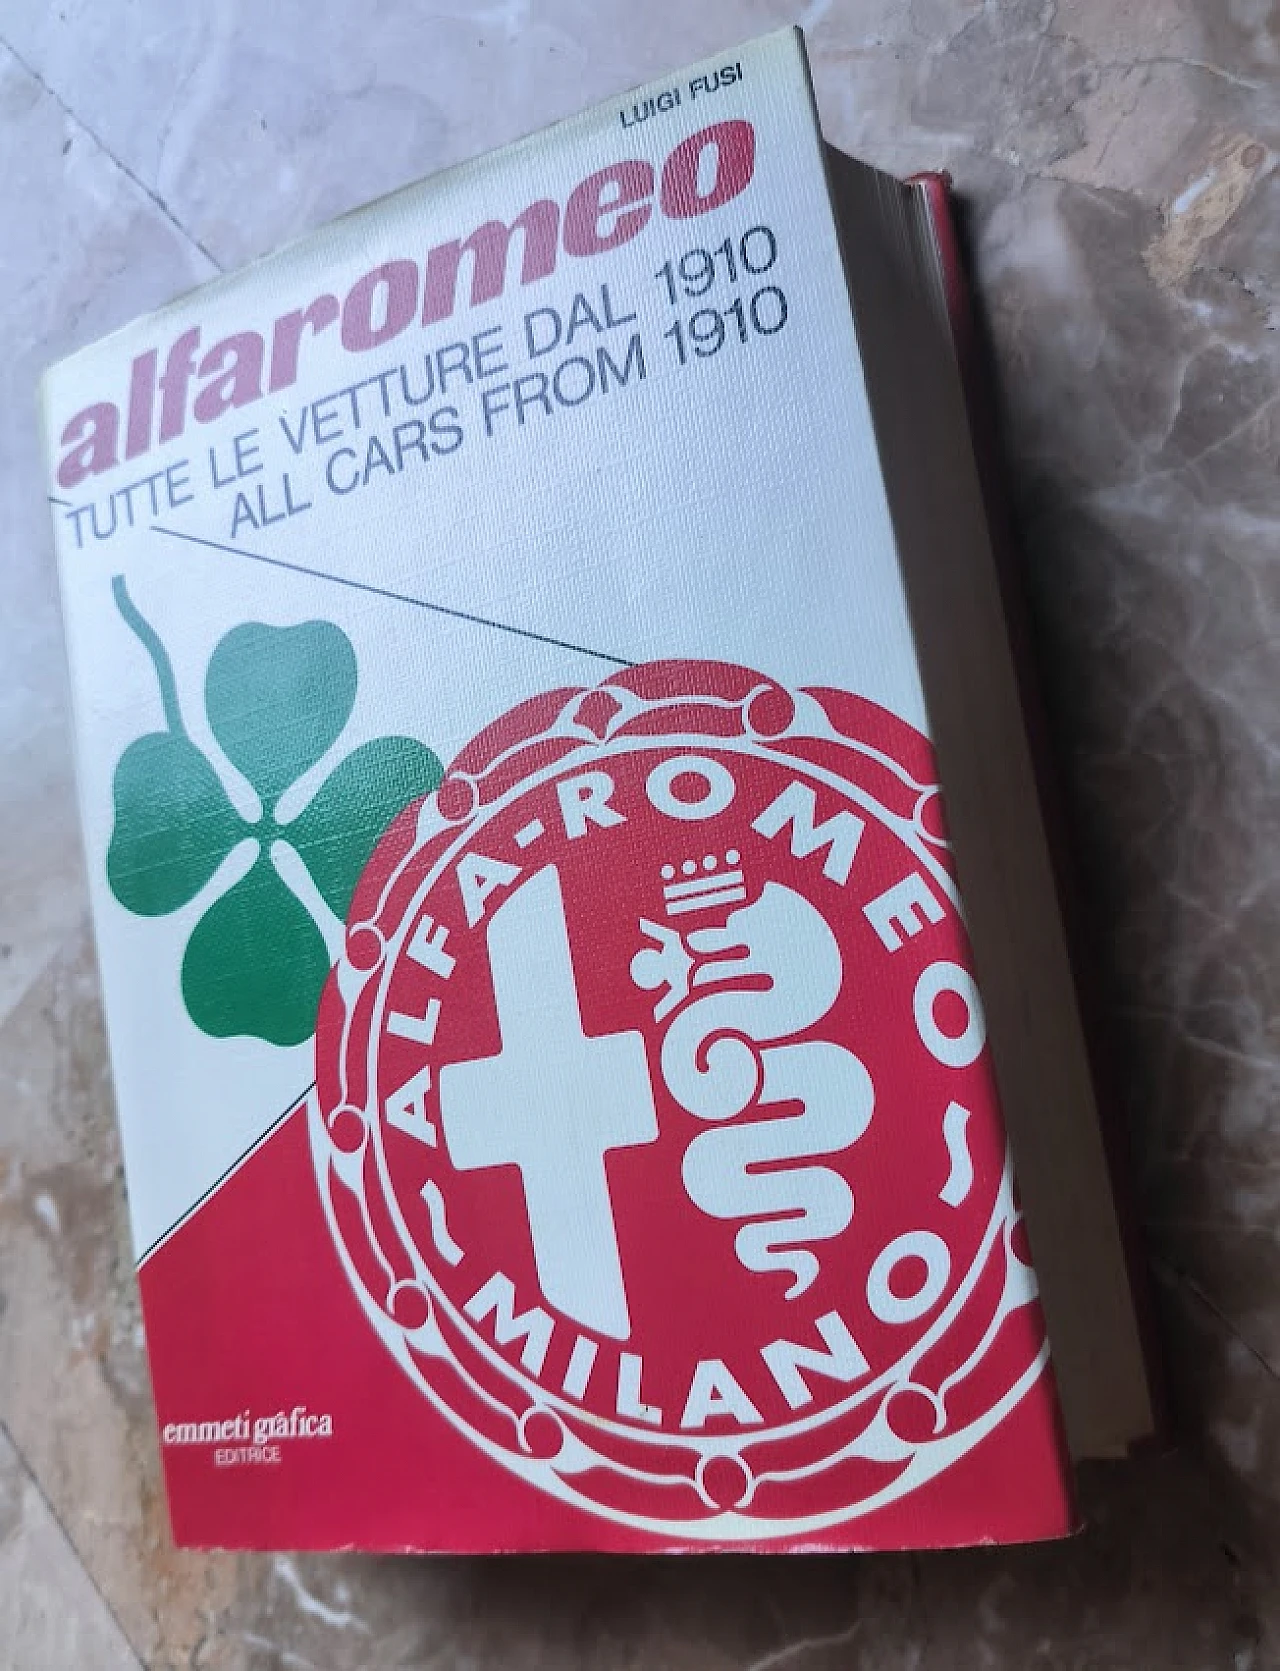 Alfaromeo - Tutte le vetture dal 1910 book by Luigi Fusi, 1978 1